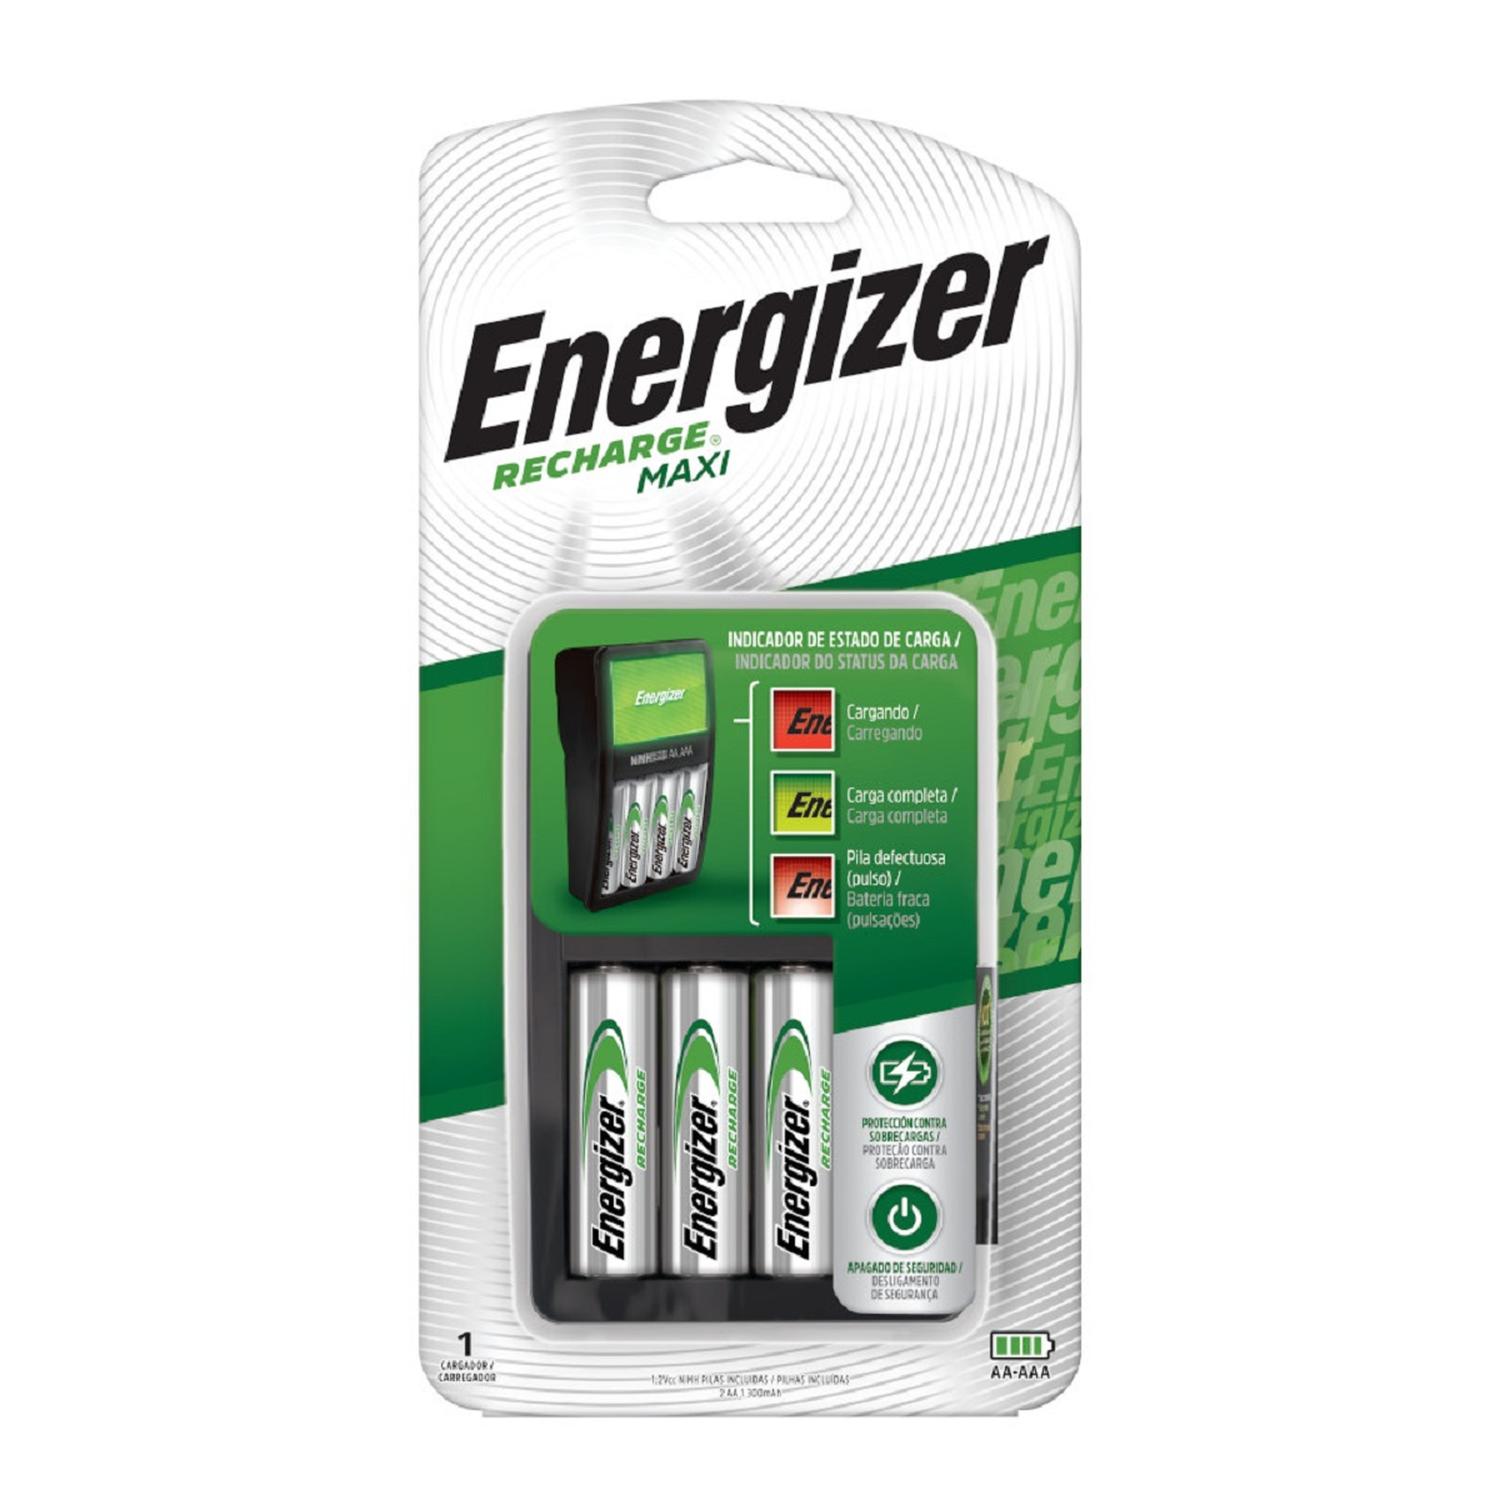 Cargador de Pilas MAXI Energizer + 2AA + 2AAA Energizer